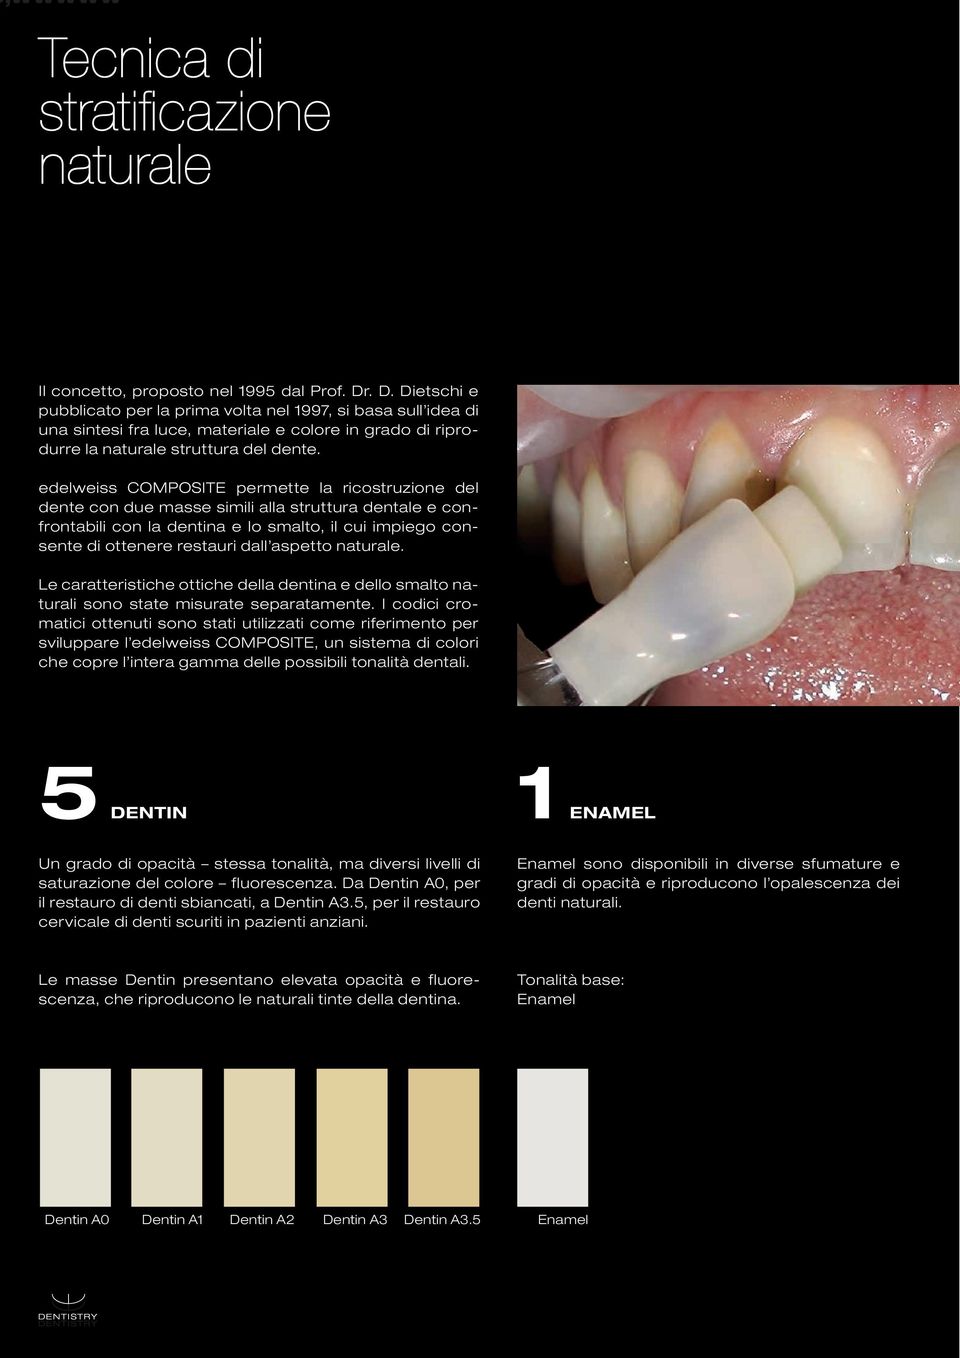 edelweiss COMPOSITE permette la ricostruzione del dente con due masse simili alla struttura dentale e confrontabili con la dentina e lo smalto, il cui impiego consente di ottenere restauri dall